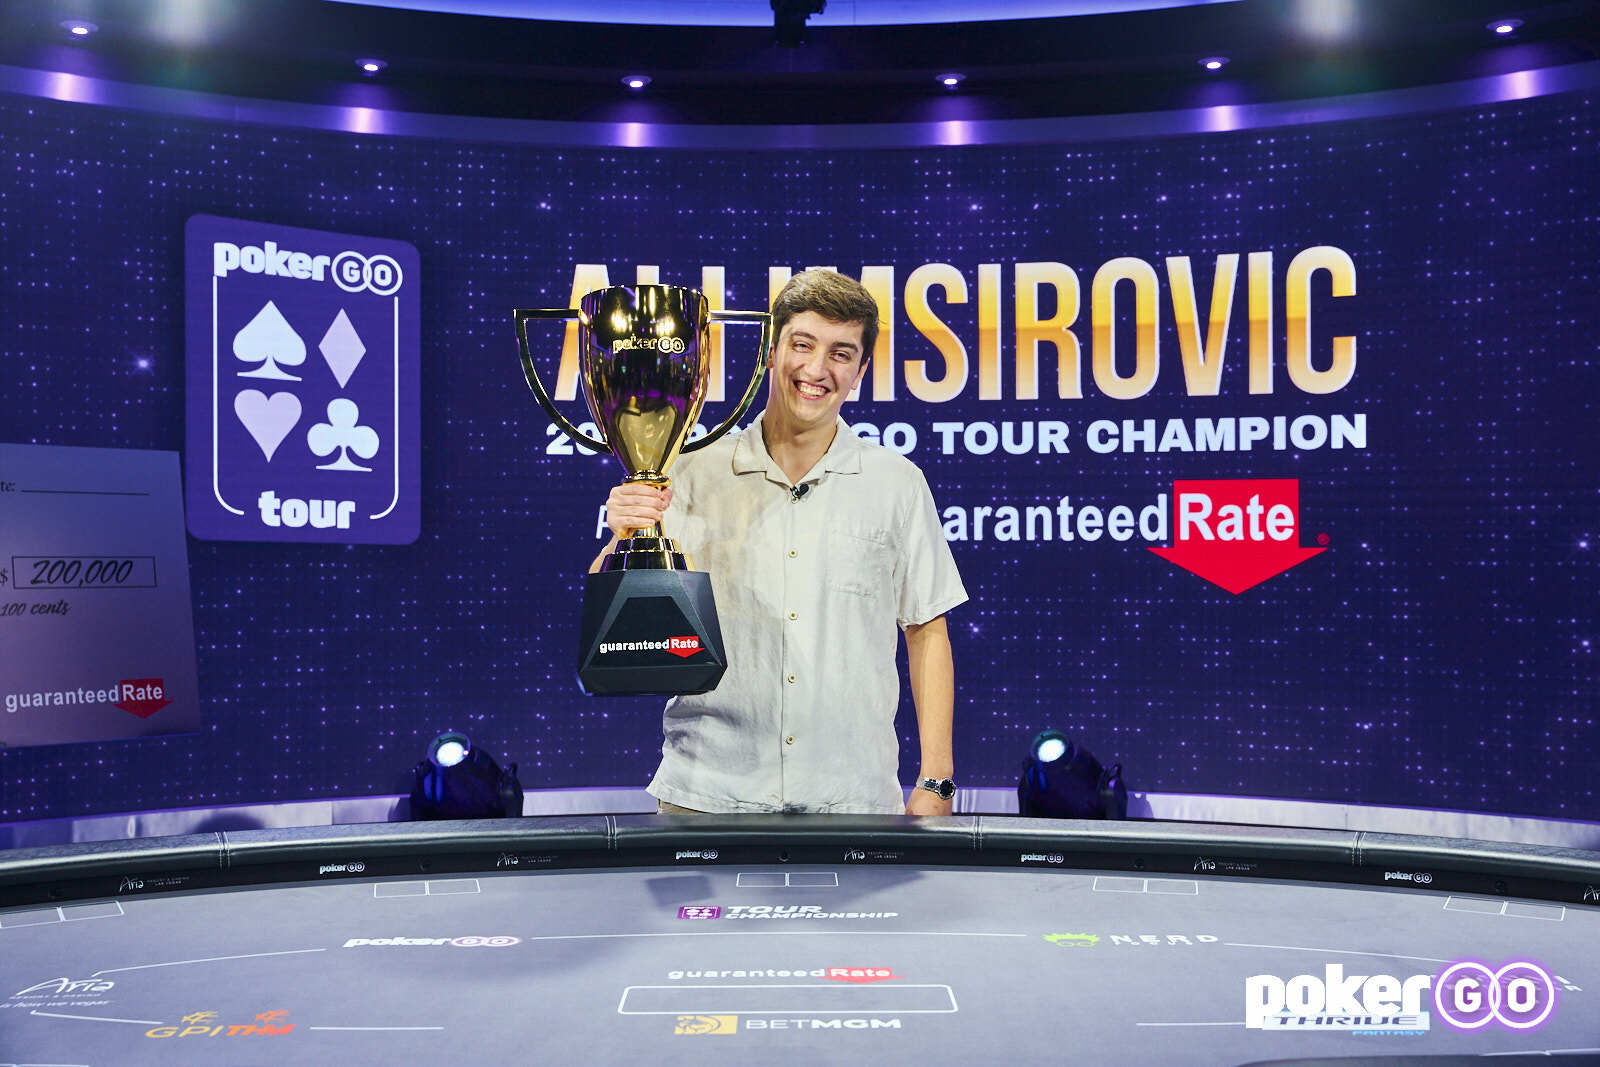 Али Имсирович с трофеем «Игрок года PokerGo Tour 2021»